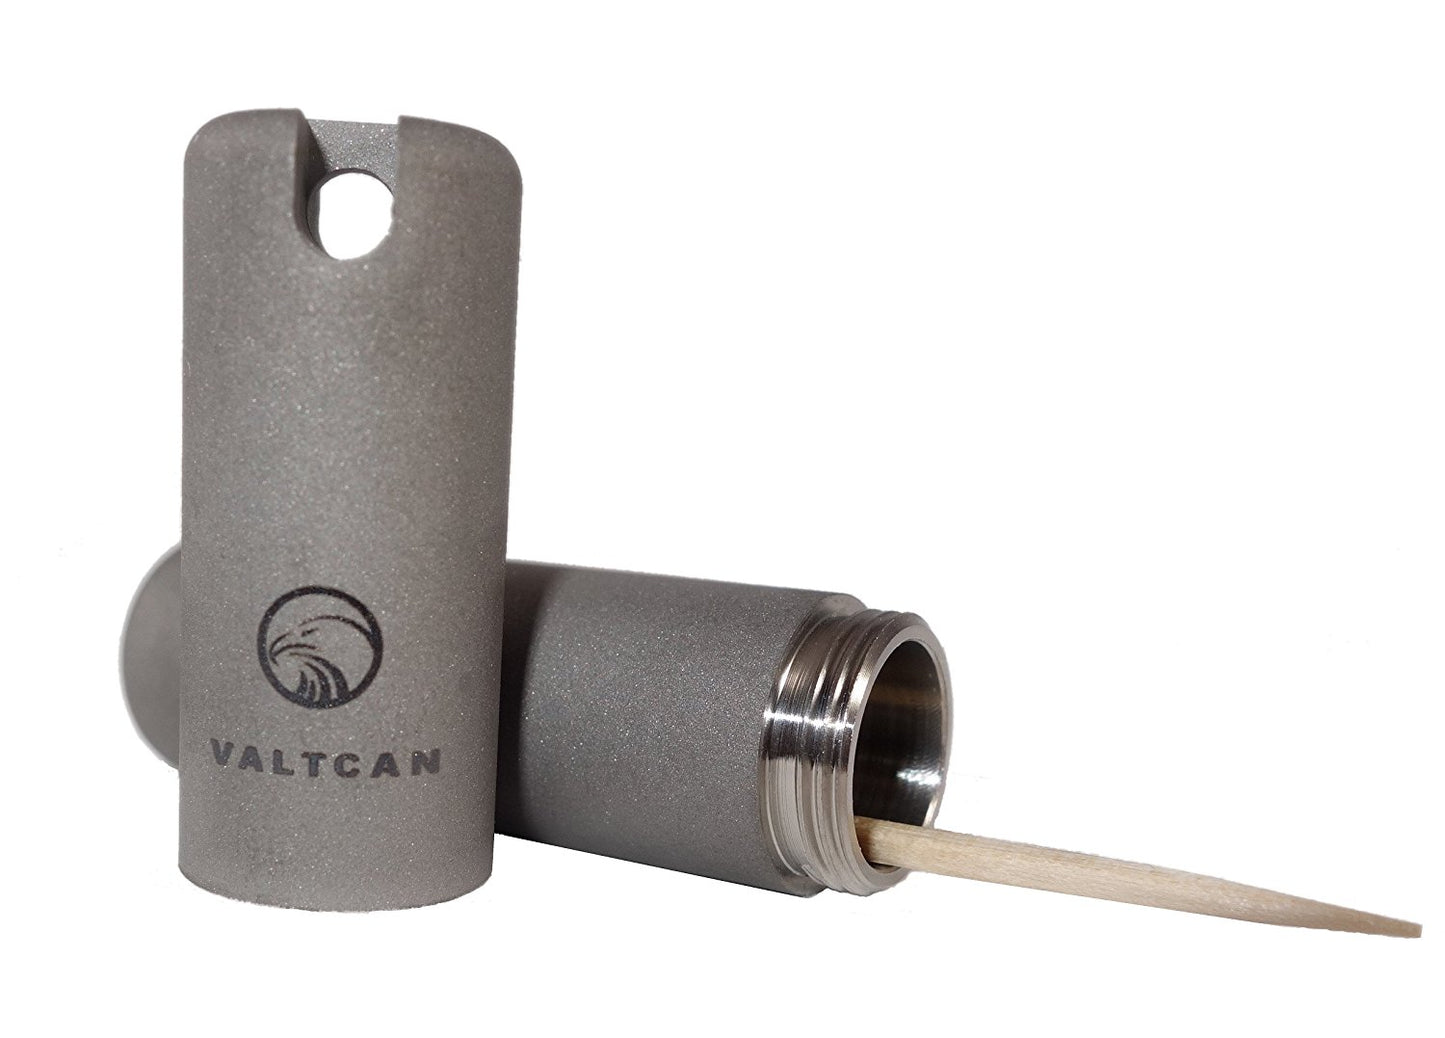 Valtcan Zahnstocherhalter aus reinem Titan mit mattem Finish für einseitige Zahnstocher, 26 g 